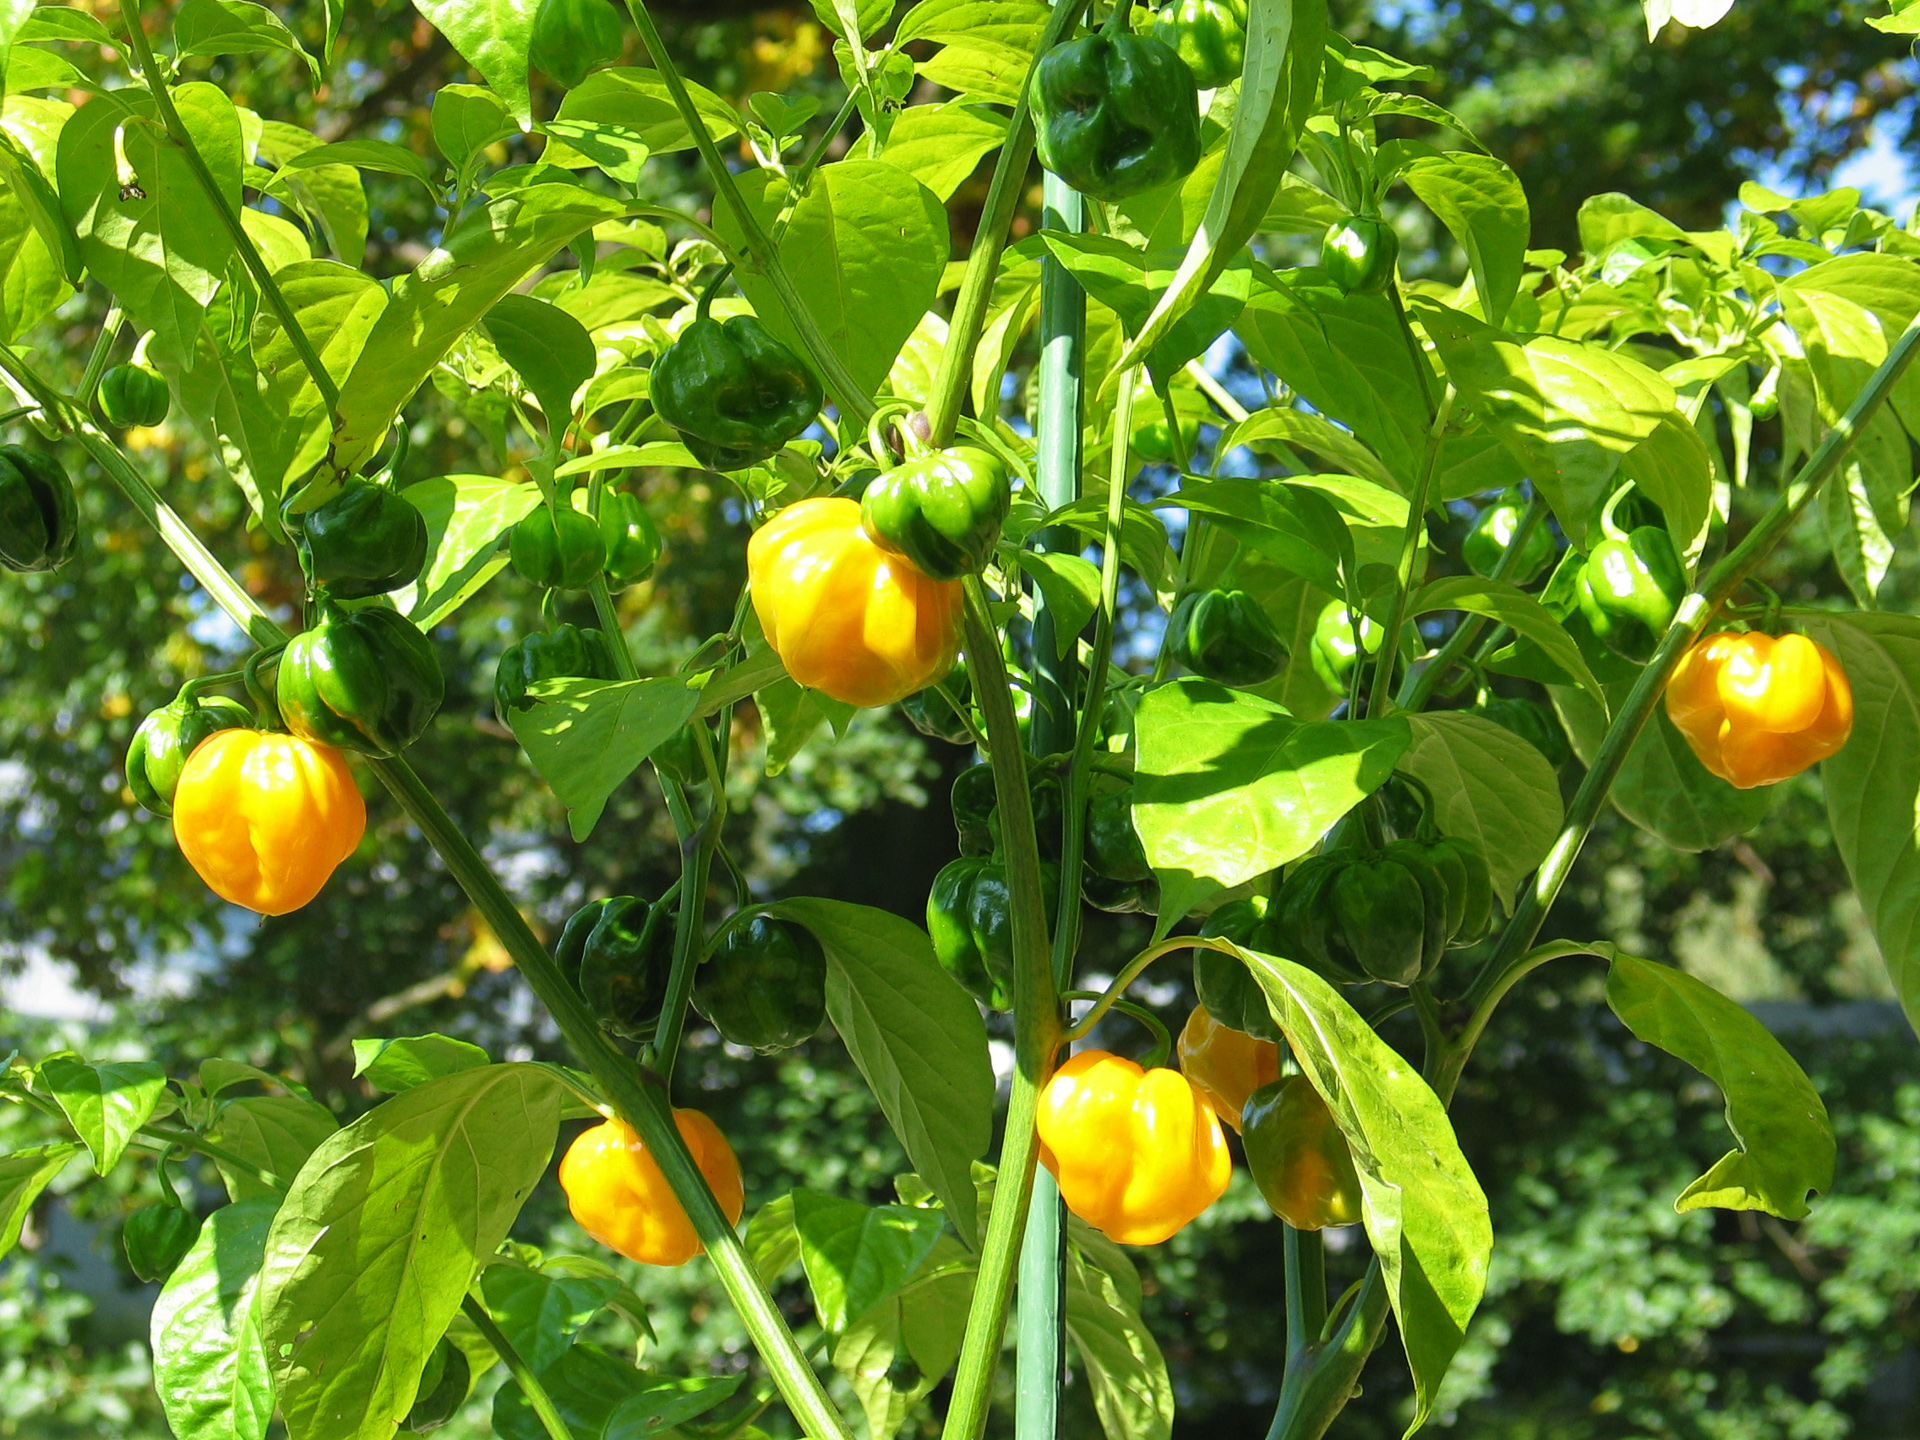 Kocsolai Piros - Capsicum annuum - variedad de chile